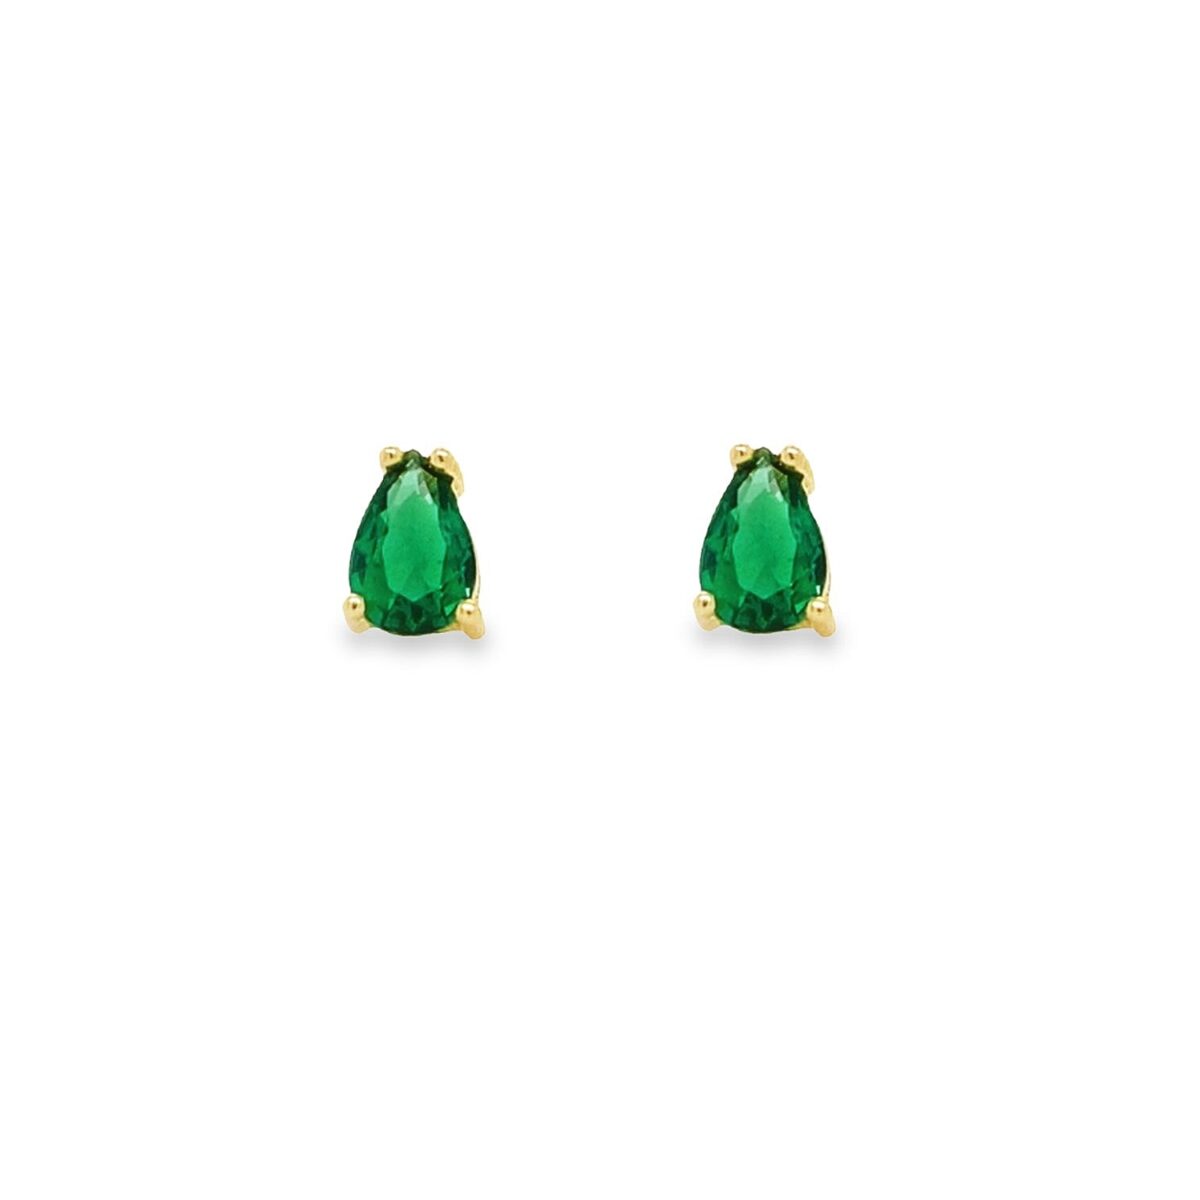 Jewellers - Σκουλαρίκια δάκρυ με πράσινα ζιργκόν